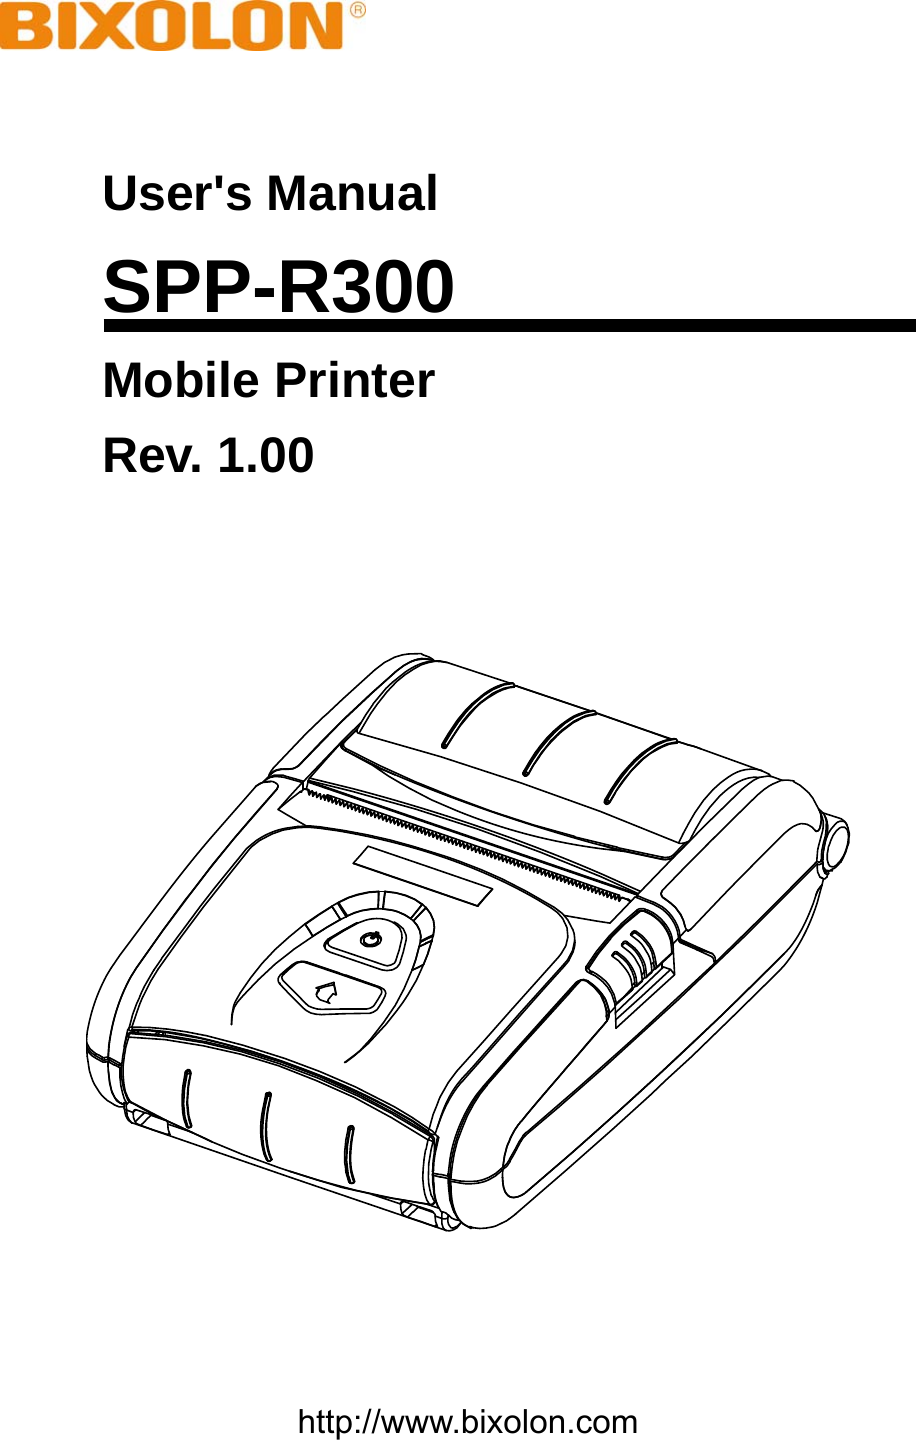    User&apos;s Manual SPP-R300 Mobile Printer Rev. 1.00      http://www.bixolon.com 